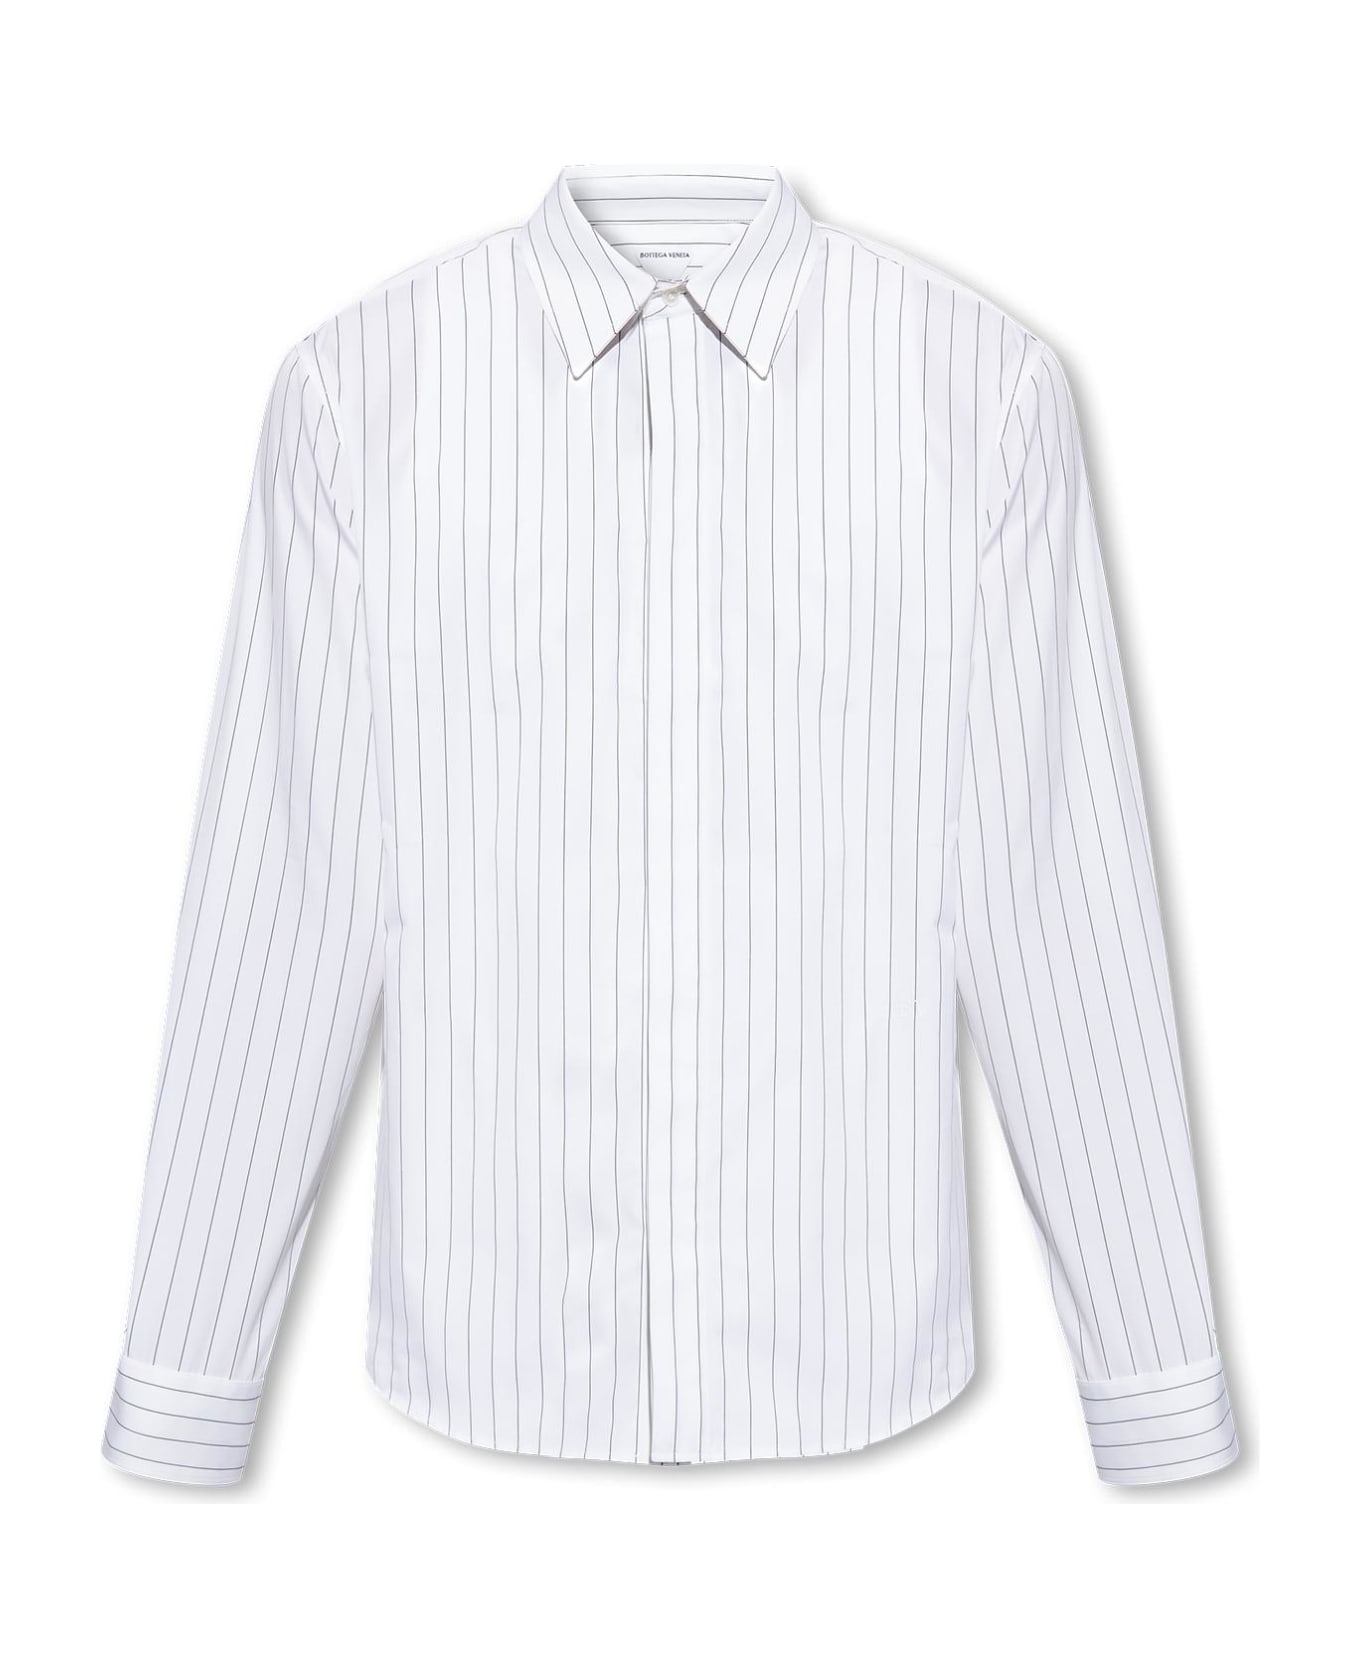 Bottega Veneta Striped Cotton Shirt - WHITE/GREY STRIPES シャツ